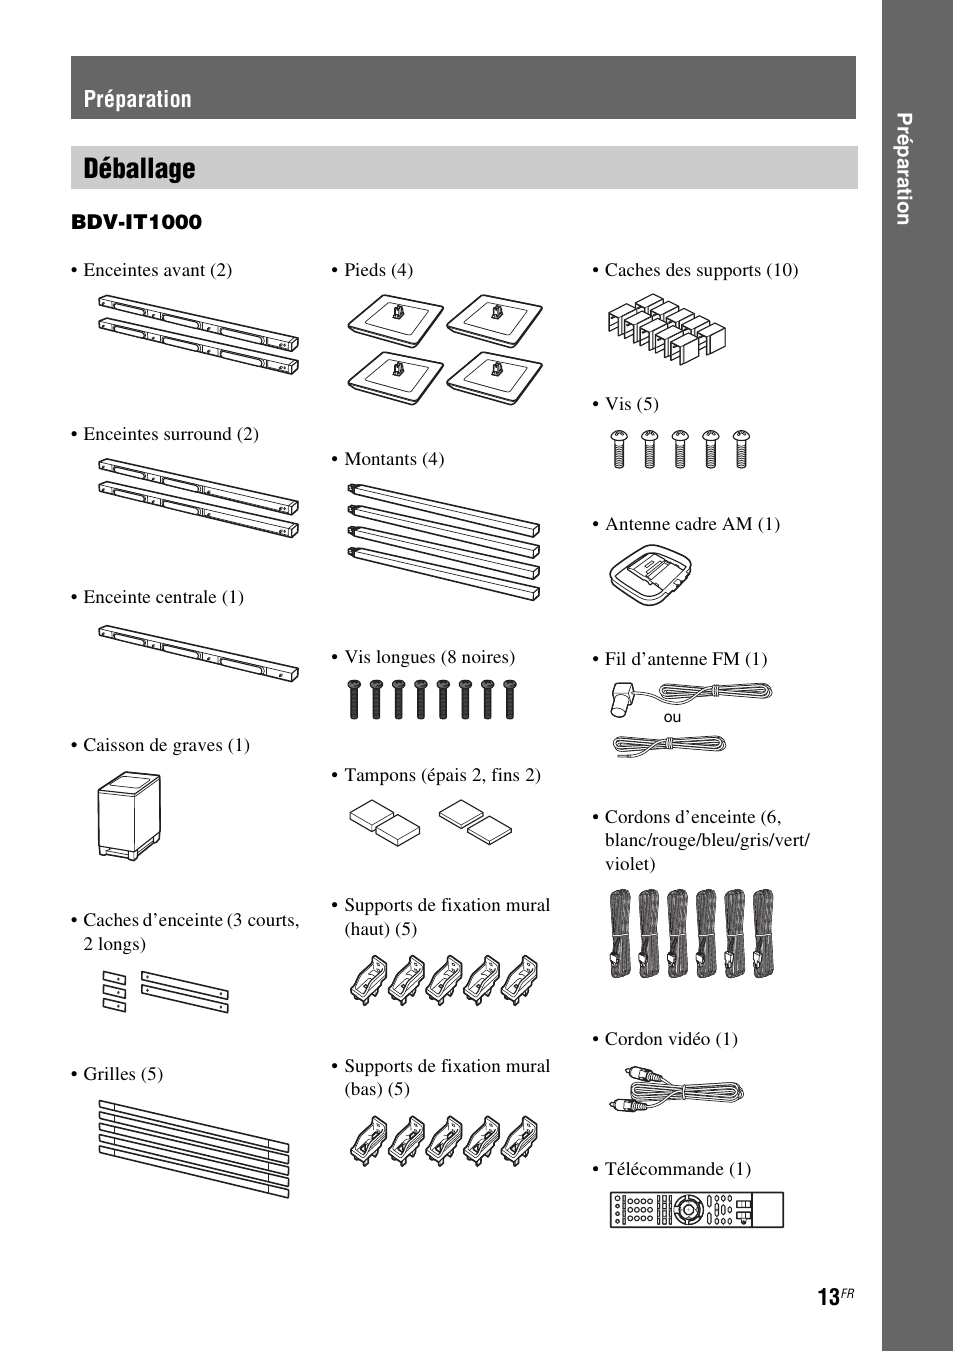 Préparation, Déballage | Sony BDV-IS1000 Benutzerhandbuch | Seite 13 / 323